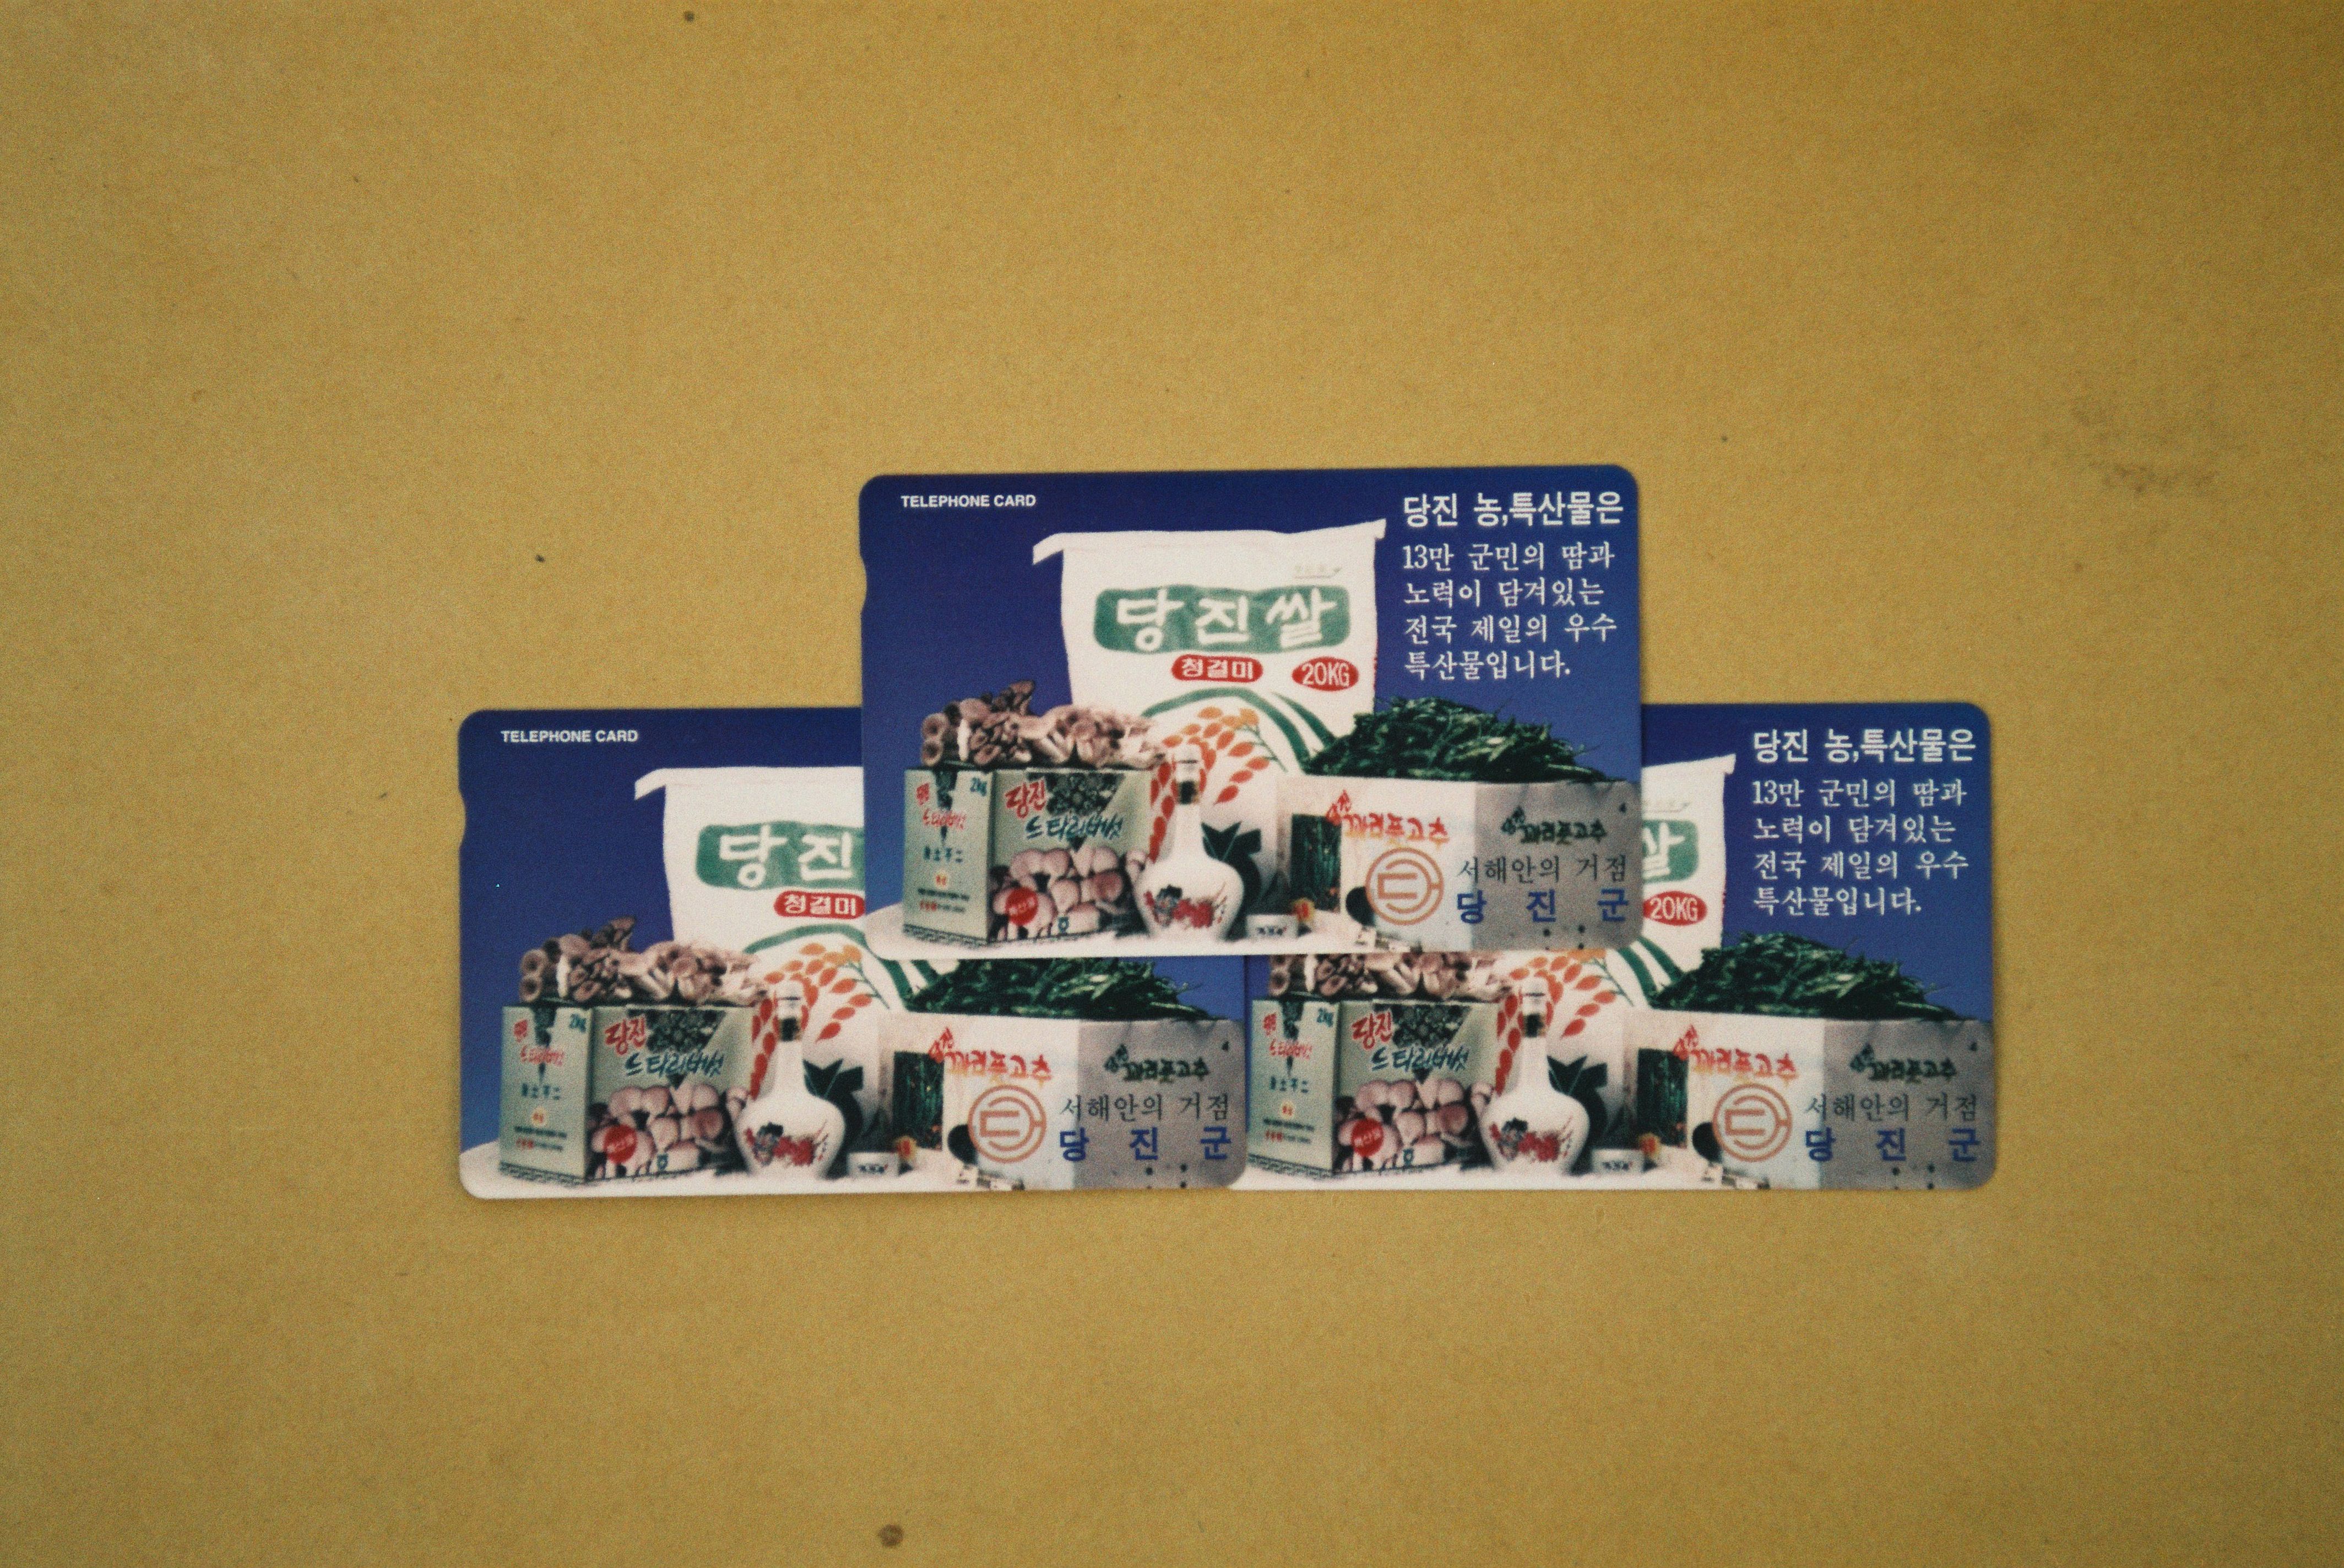 사진자료(1990년대)/1996/당진군 전화 카드 0/